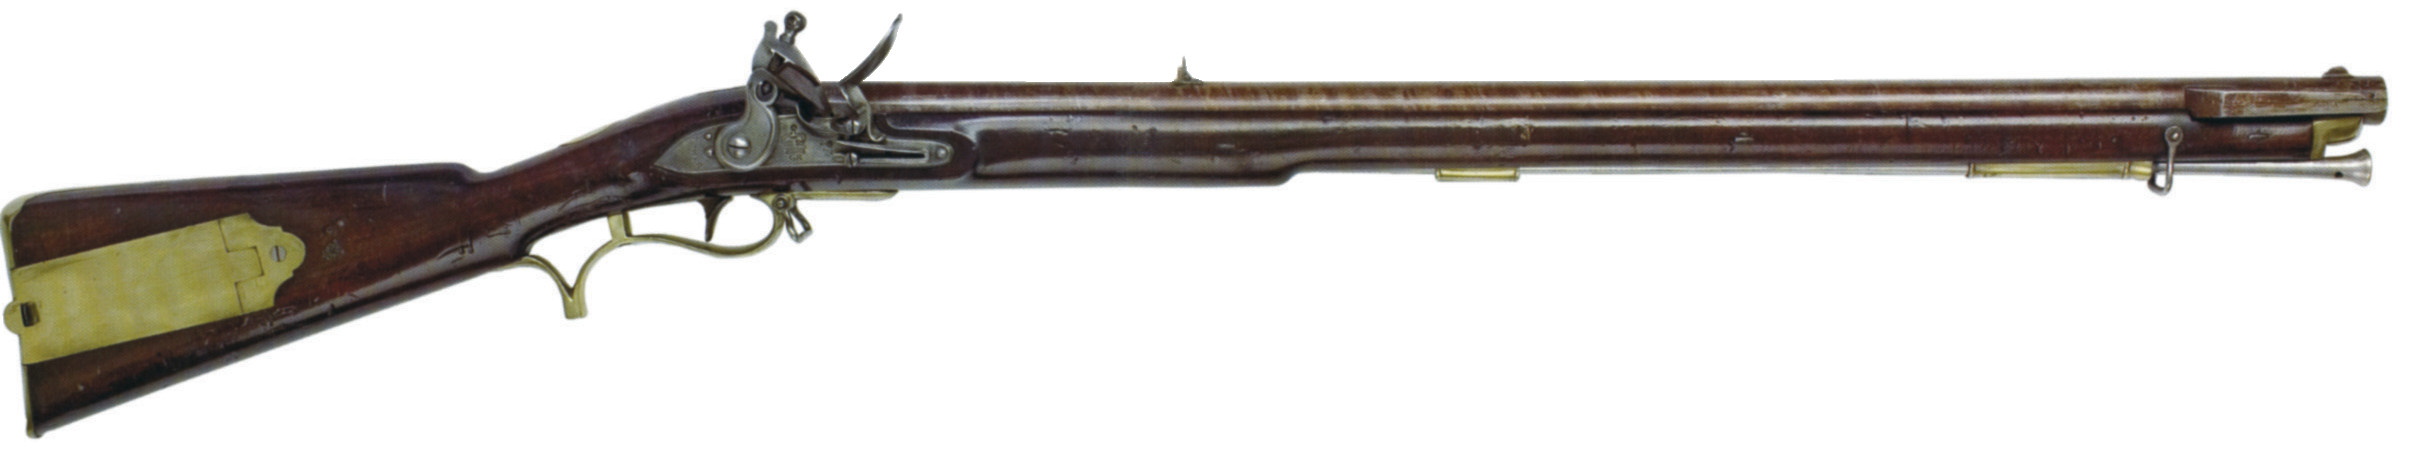 An original flintlock Baker Rifle